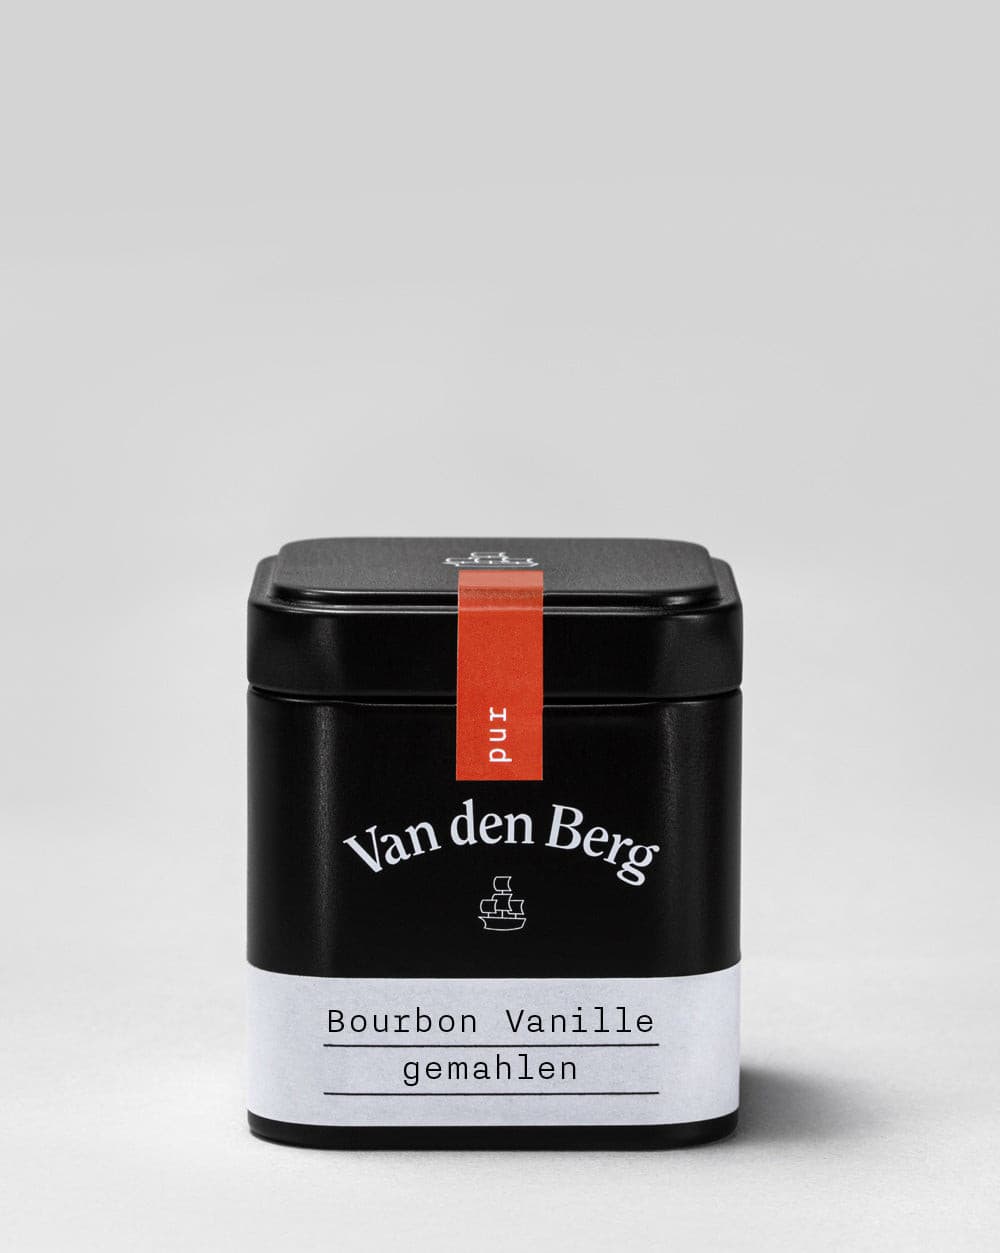 Bourbon Vanille, gemahlen.